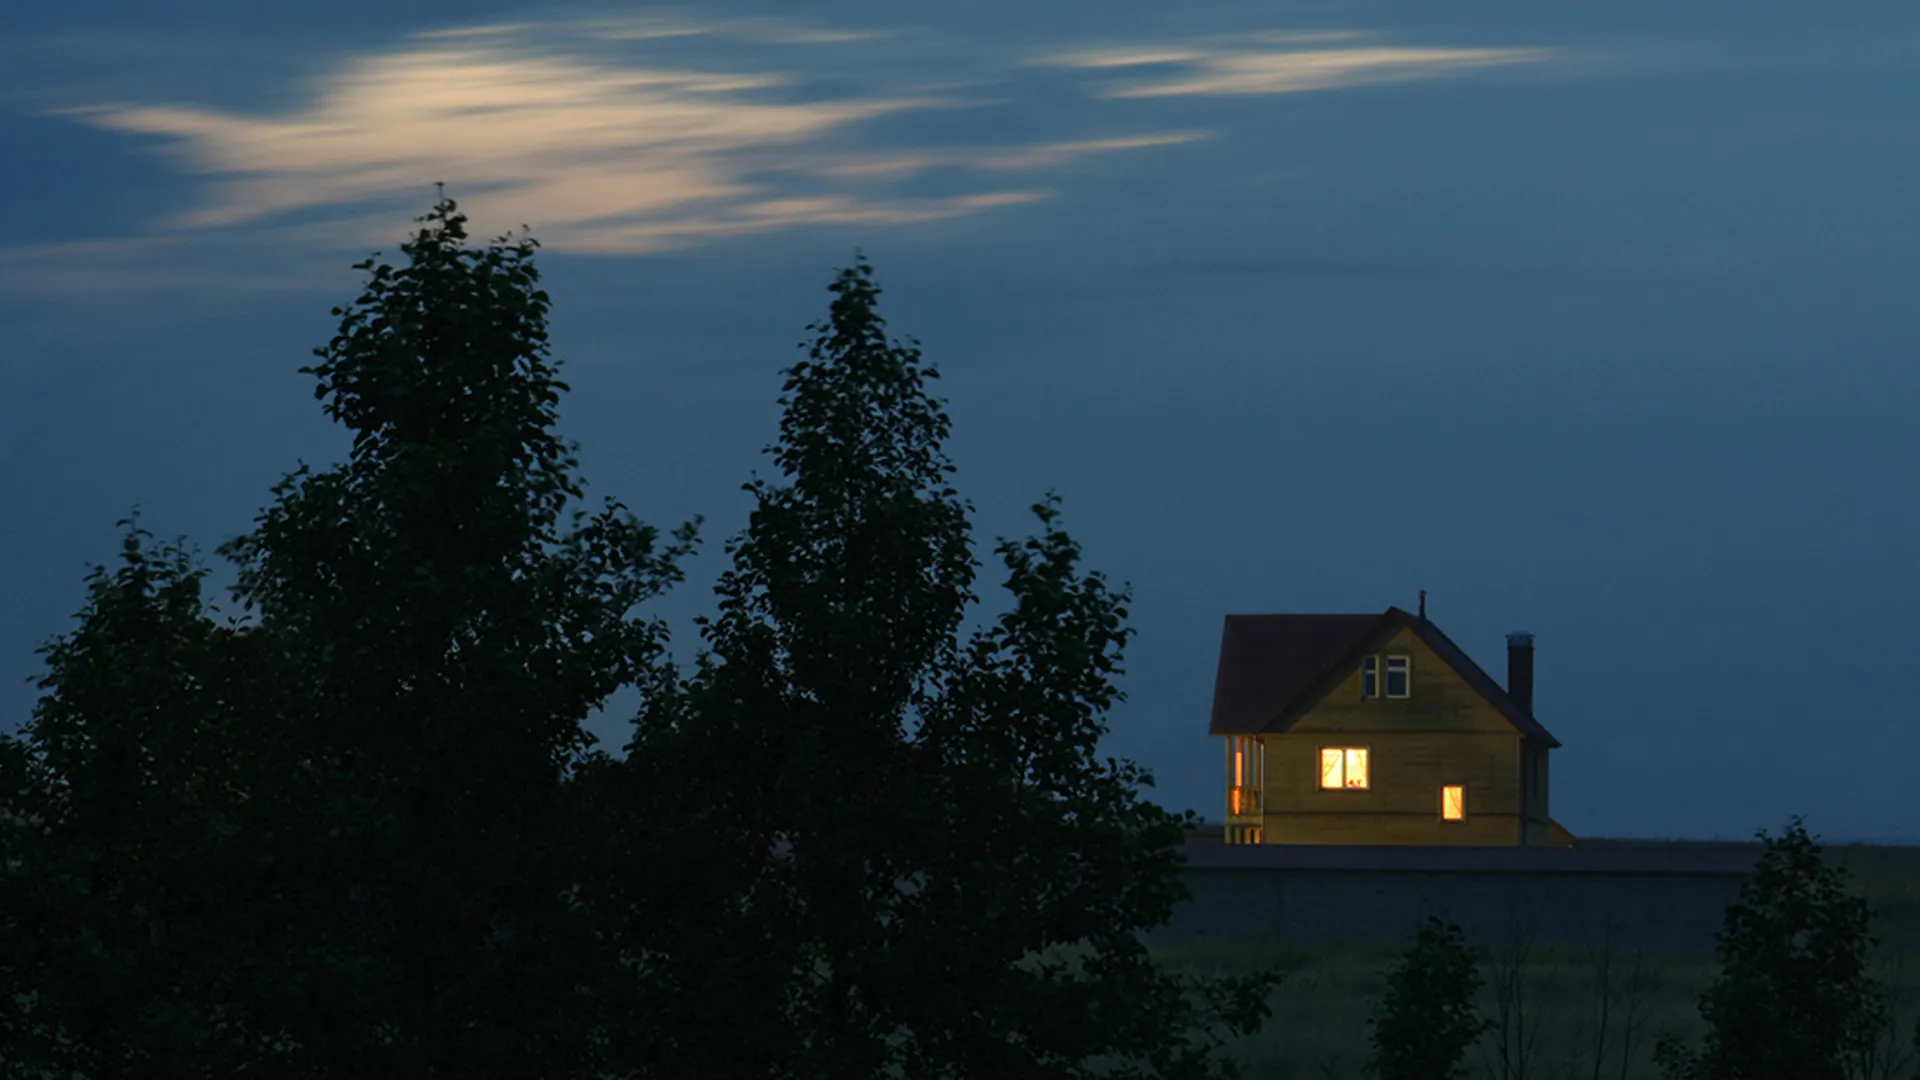 Ensam villa med lampor i fönstren på kvällen